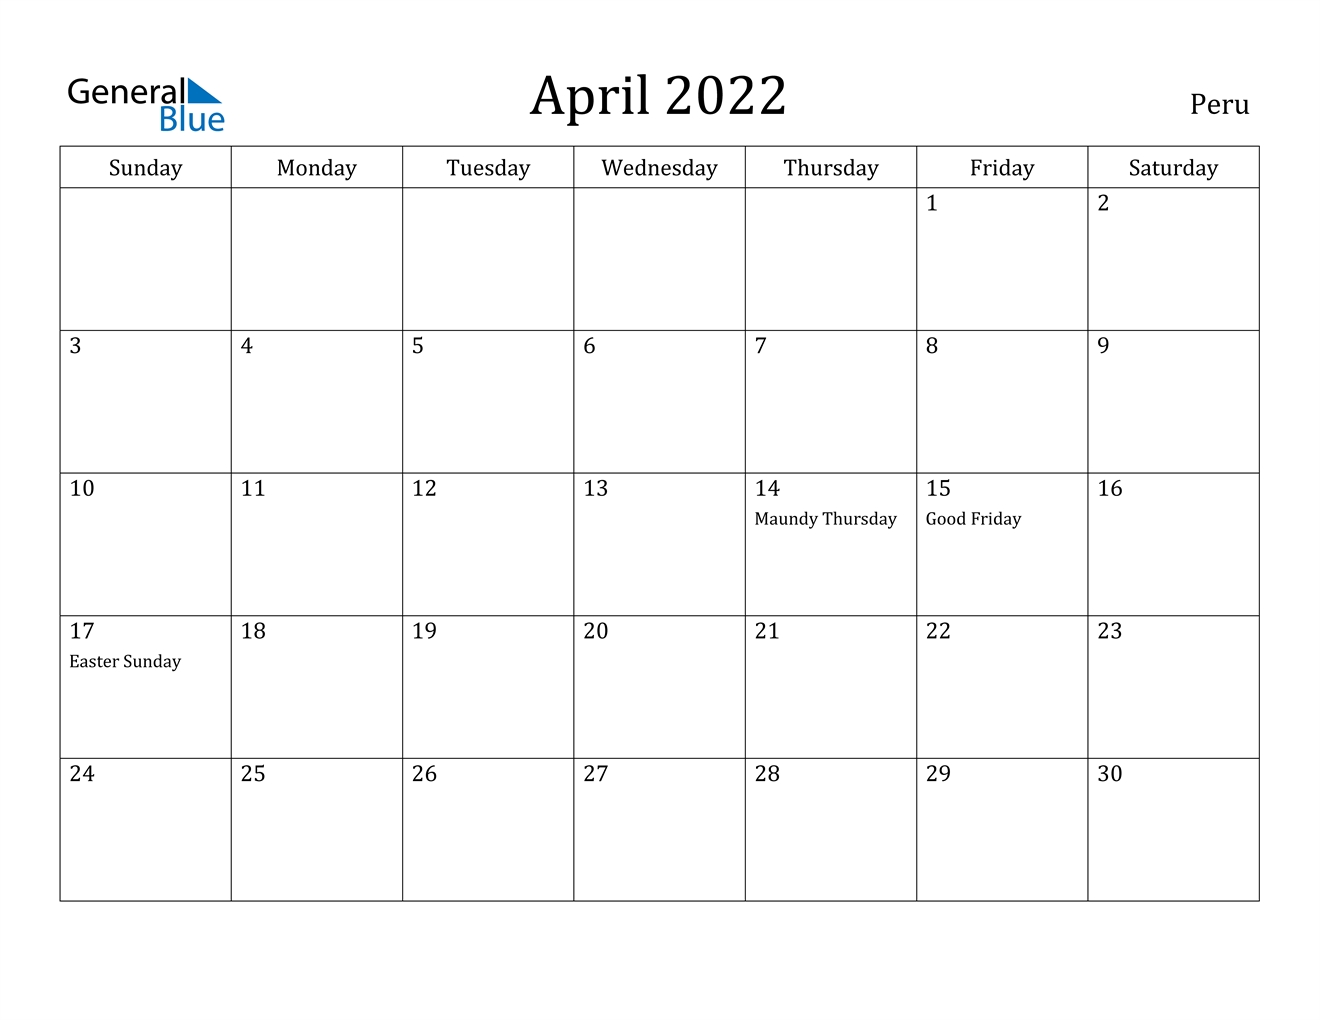 April 2022 Calendar - Peru